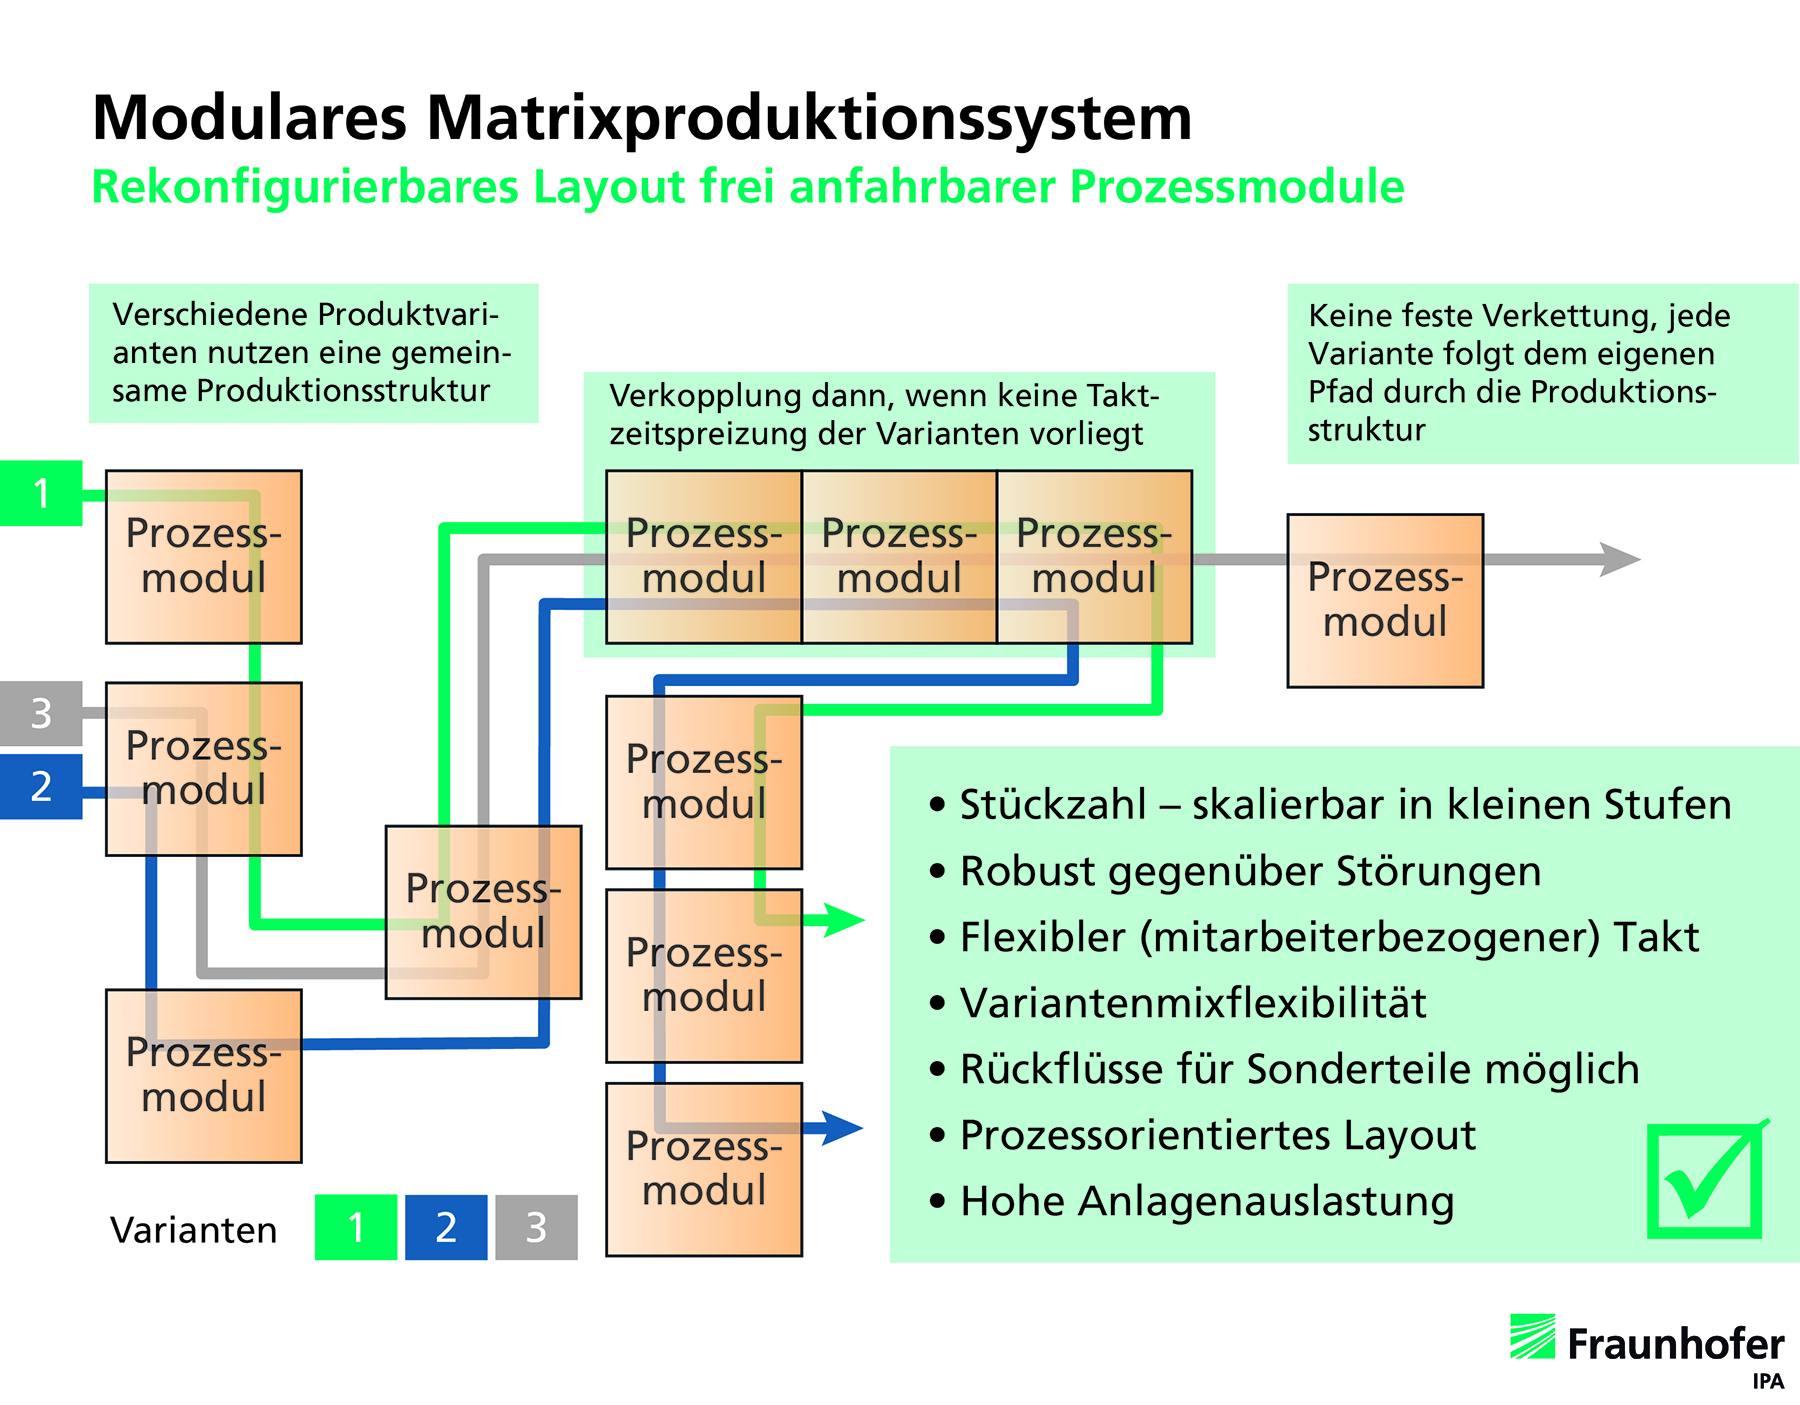 Modulare Matrixproduktion - Fraunhofer IPA